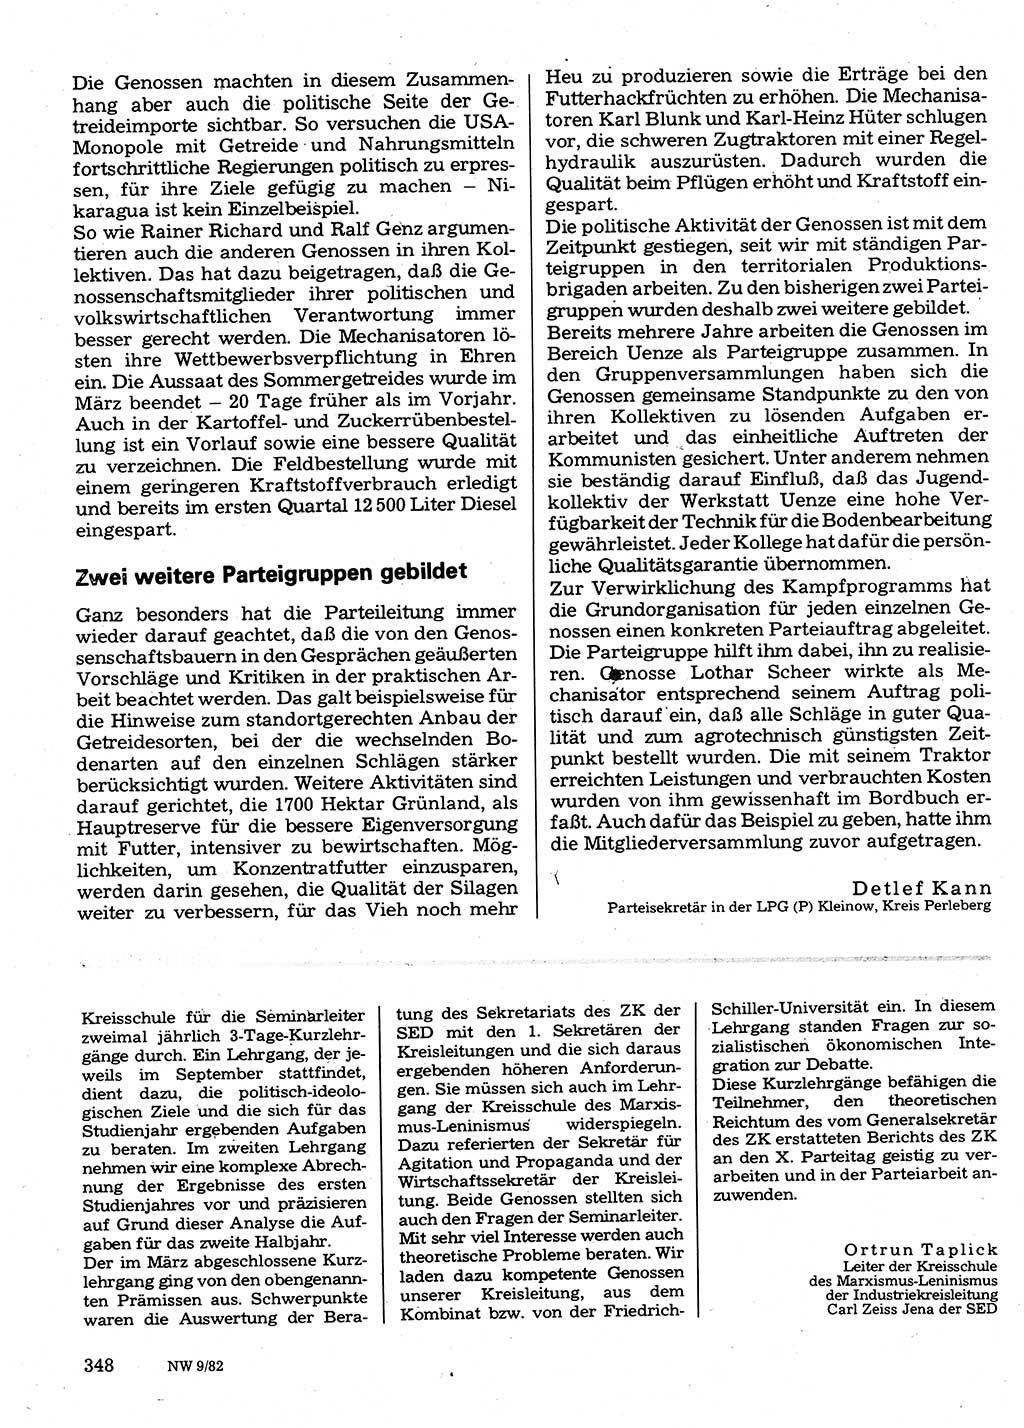 Neuer Weg (NW), Organ des Zentralkomitees (ZK) der SED (Sozialistische Einheitspartei Deutschlands) für Fragen des Parteilebens, 37. Jahrgang [Deutsche Demokratische Republik (DDR)] 1982, Seite 348 (NW ZK SED DDR 1982, S. 348)